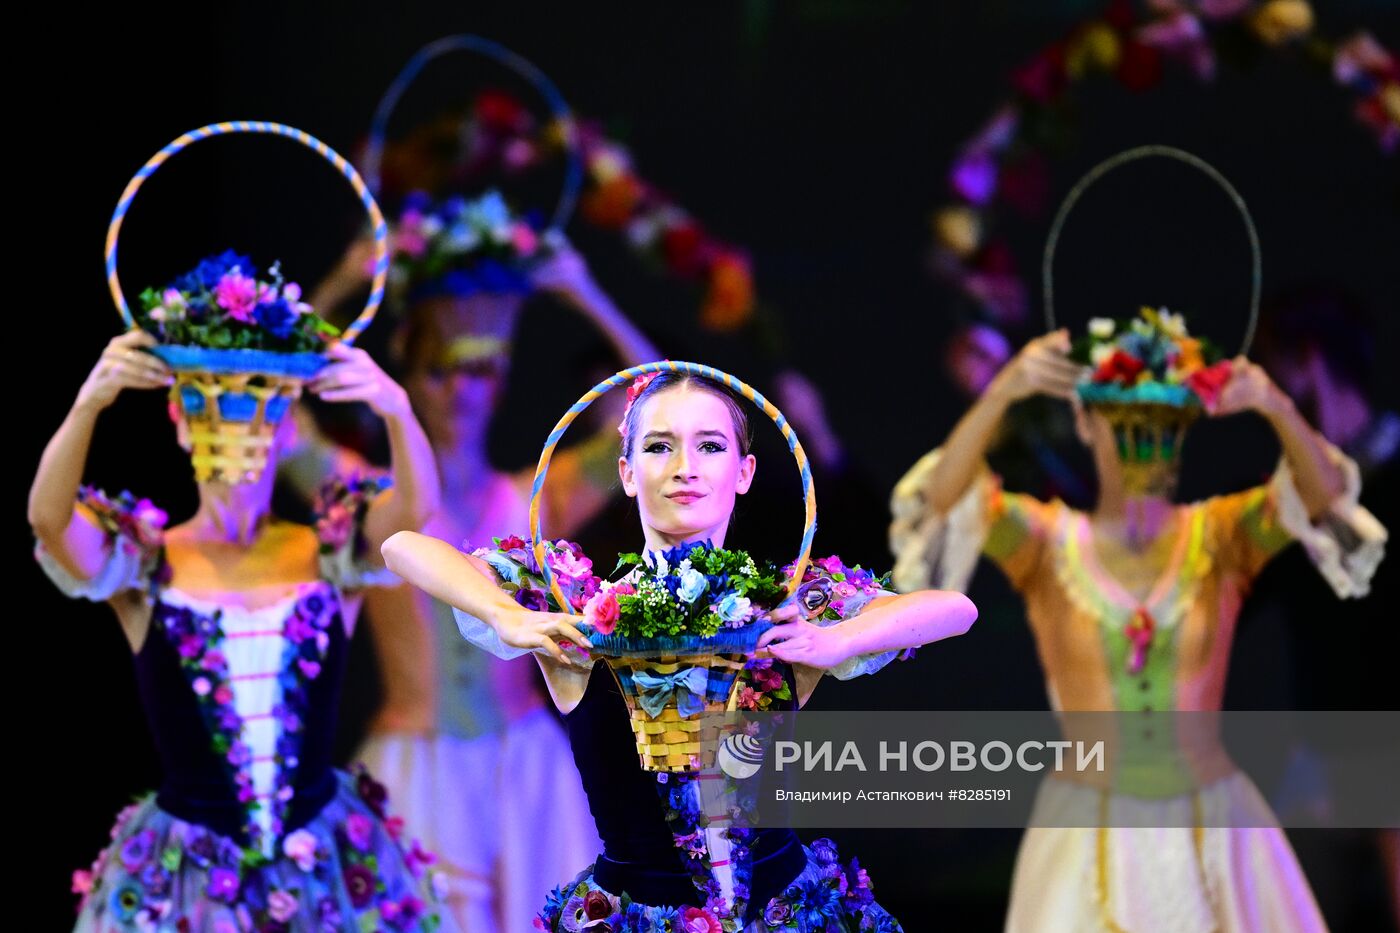 Гала-концерт ведущих солистов балетных театров России